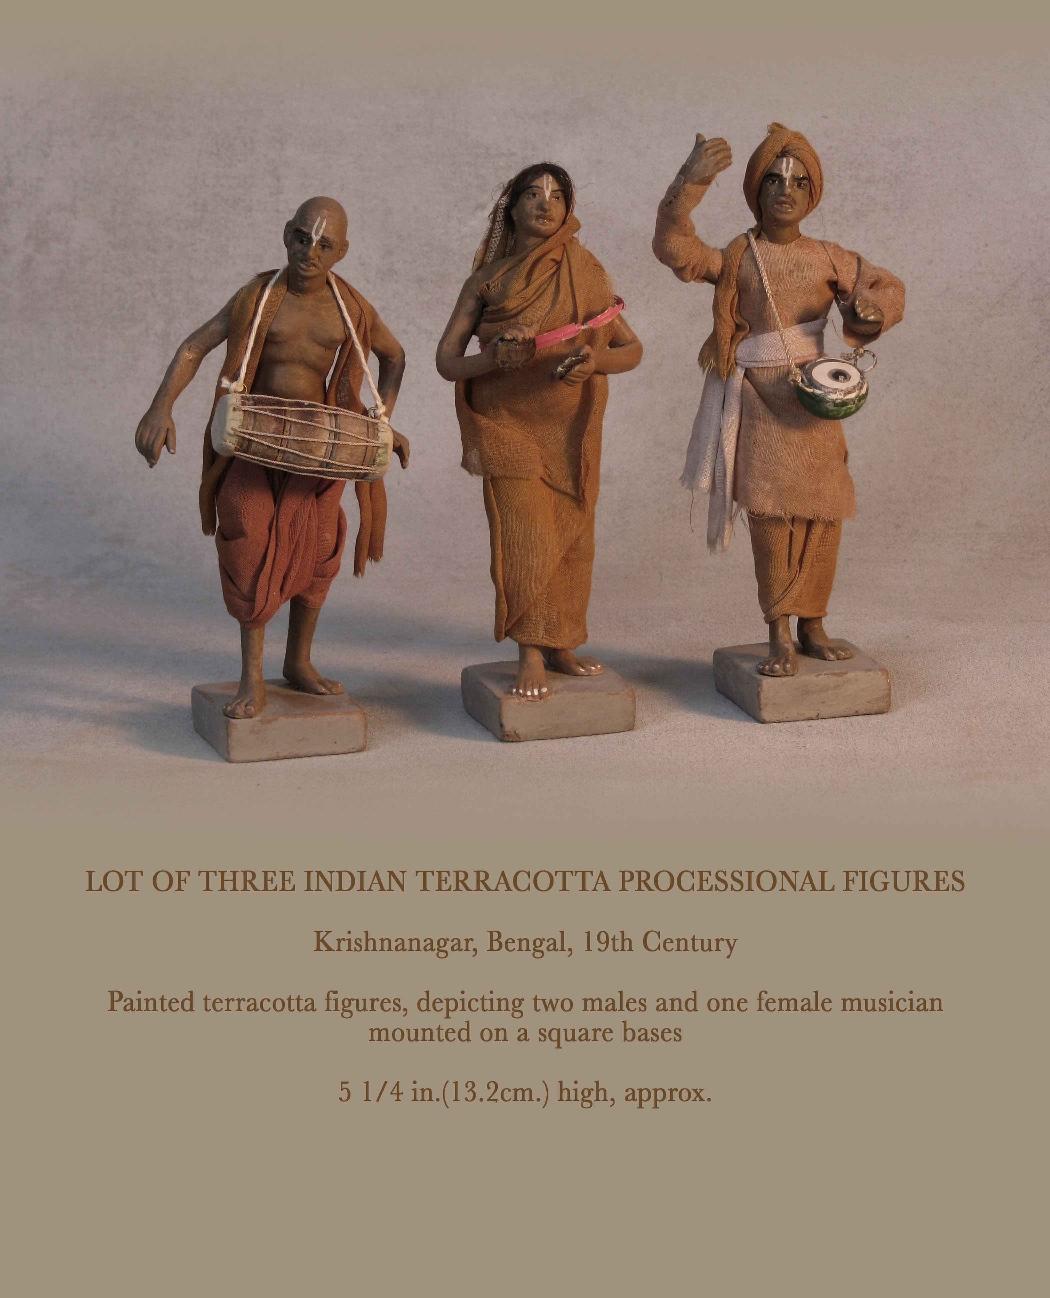 Lot de trois figurines processionnelles indiennes en terre cuite.

Krishnanagar, Bengale, XIXe siècle.

Figurines en terre cuite peinte, représentant deux hommes et une femme musiciens
montés sur une base carrée.

Mesure : 5 1/4